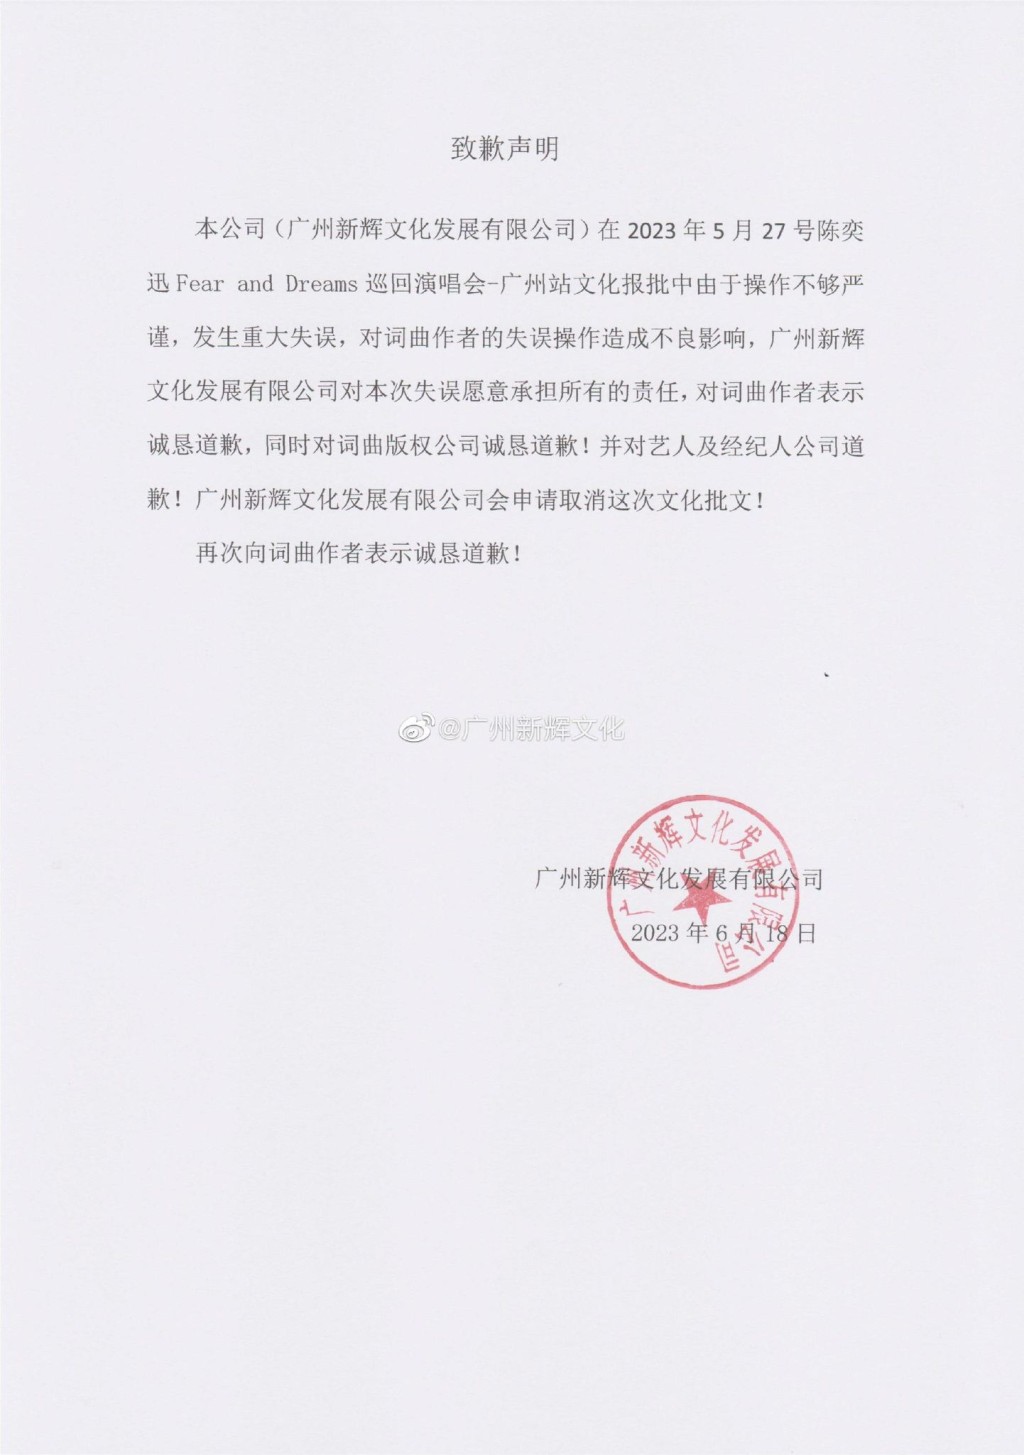 昨日主办方“广州新辉文化”微博发声明致歉。